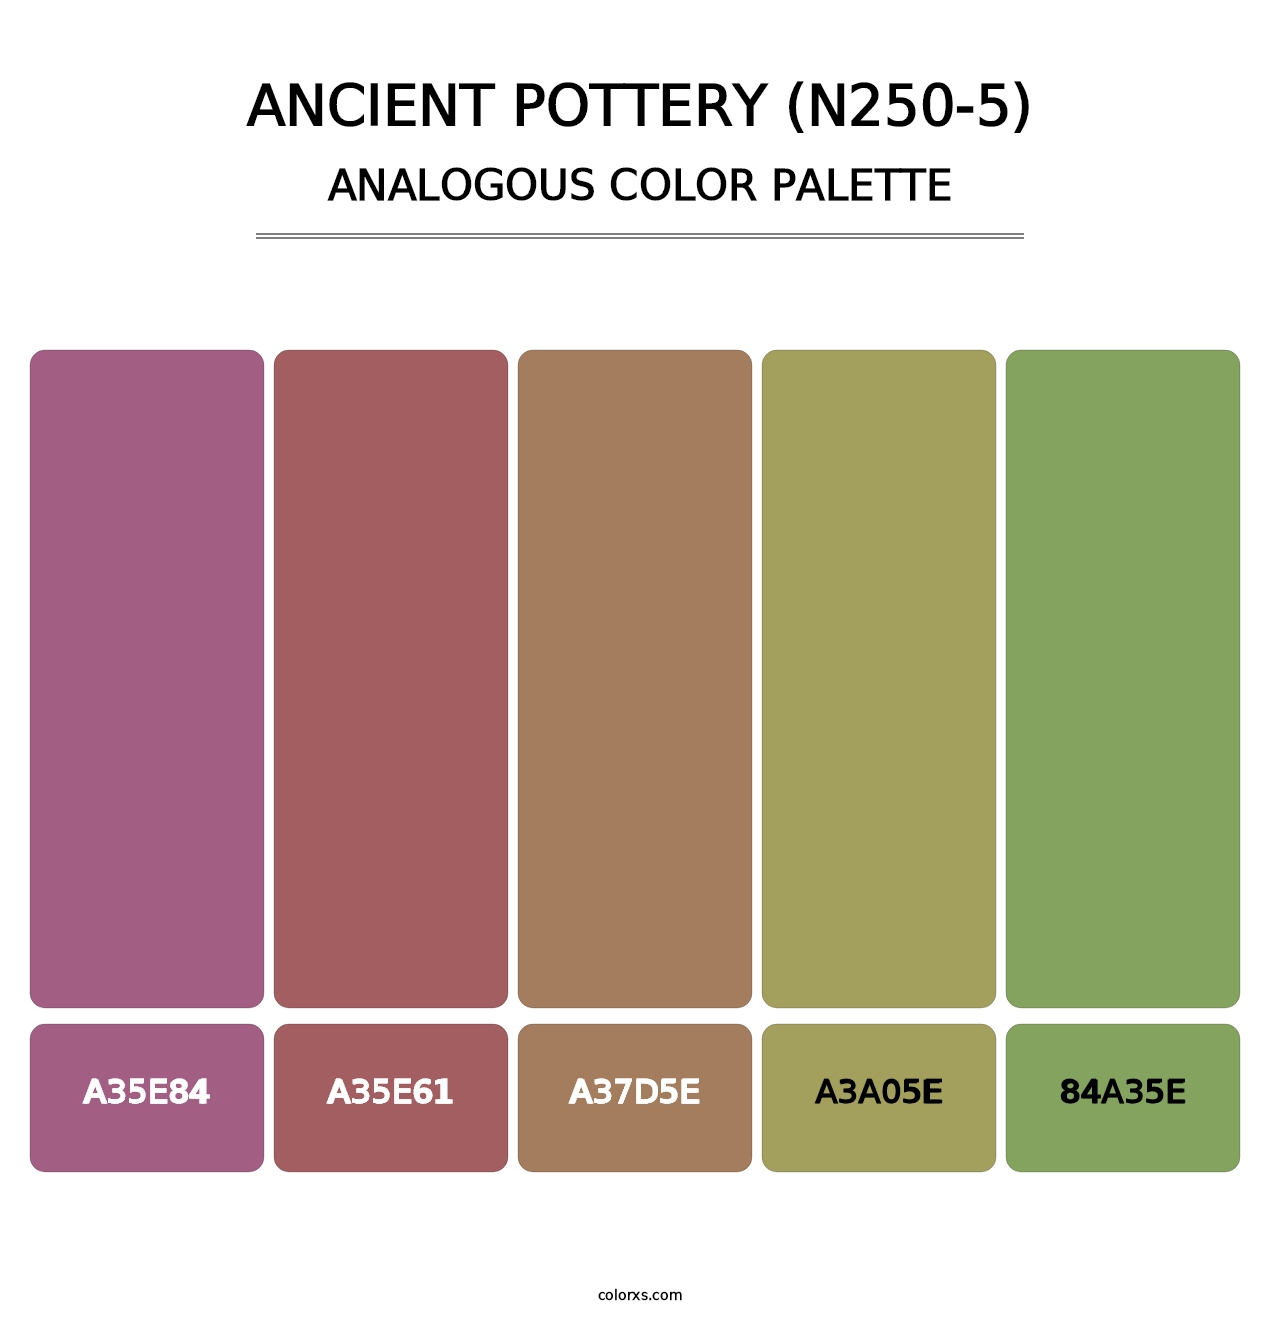 Ancient Pottery (N250-5) - Analogous Color Palette